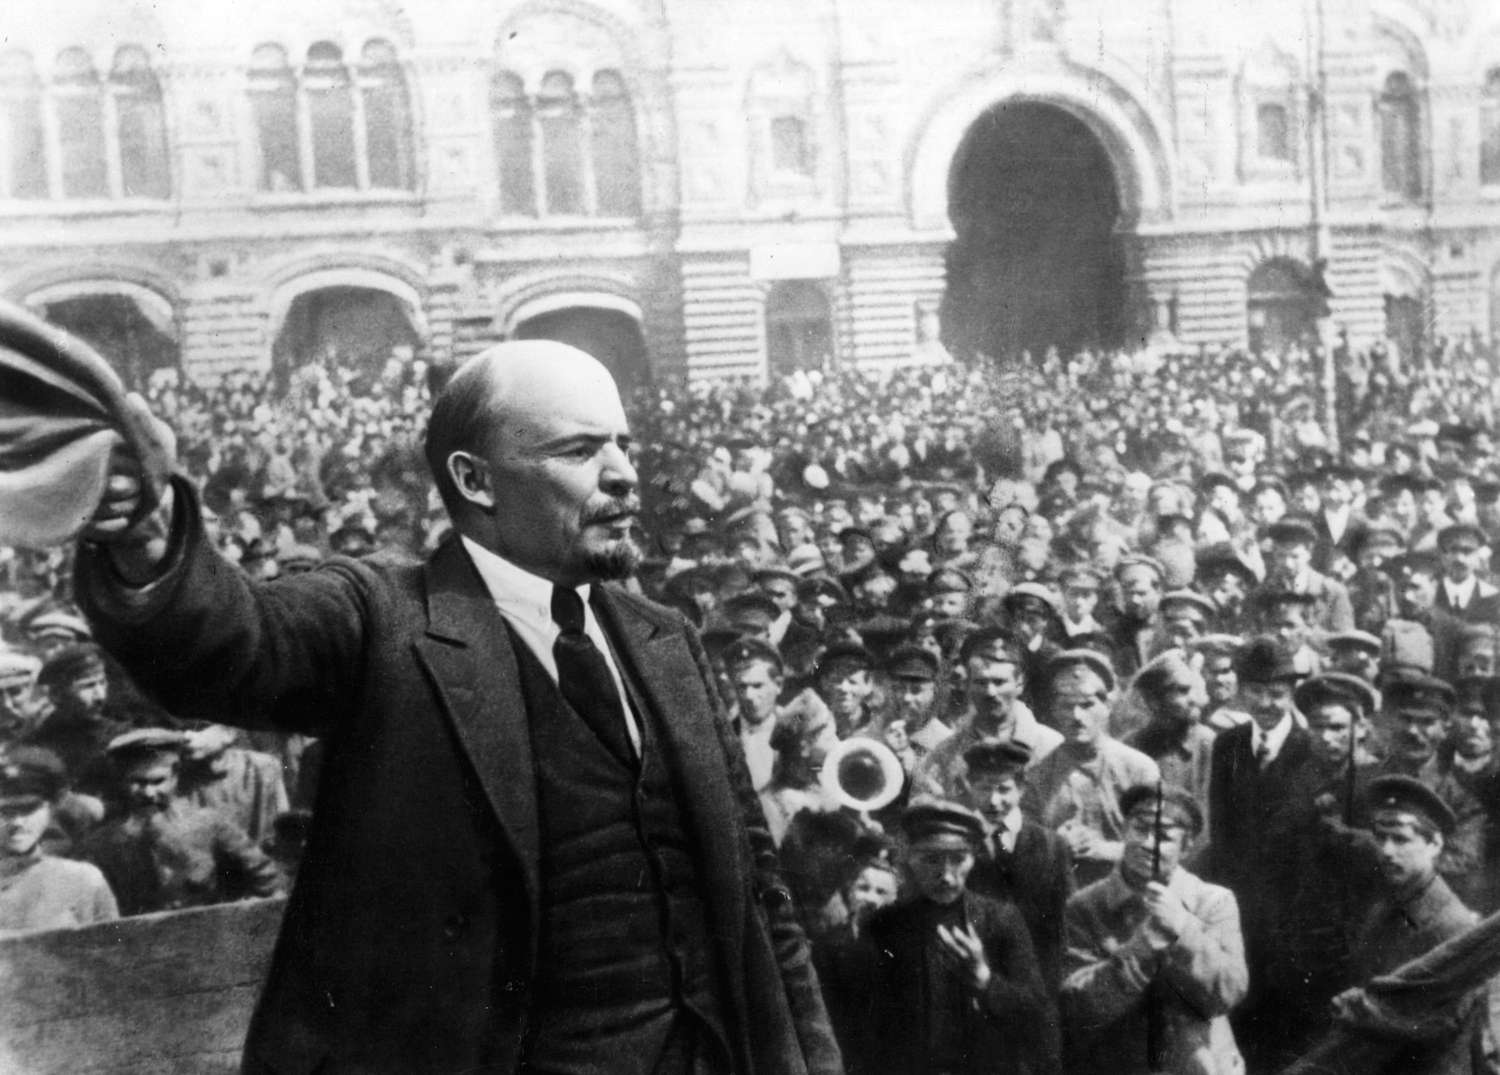 共产主义同列宁的名字及俄国革命的光荣传统有着不可磨灭的联系。//图片来源：公共领域